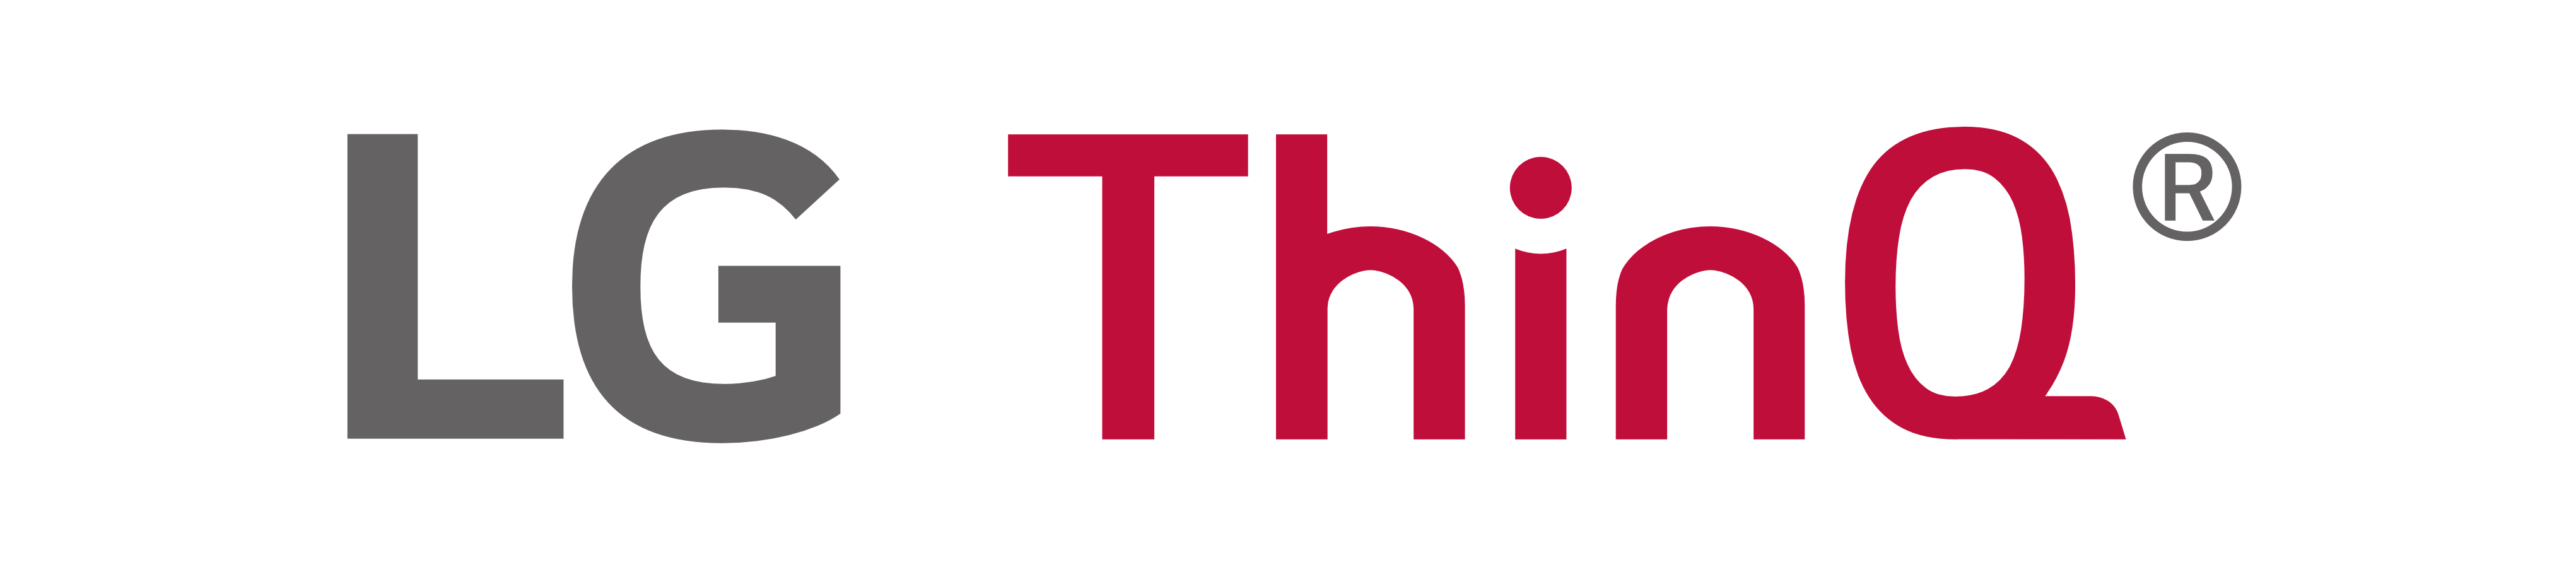 إل جي إلكترونيكس تكشف عن علامة ThinQ التجارية الخاصة بمنتجاتها وحلولها المبنية على الذكاء الاصطناعي